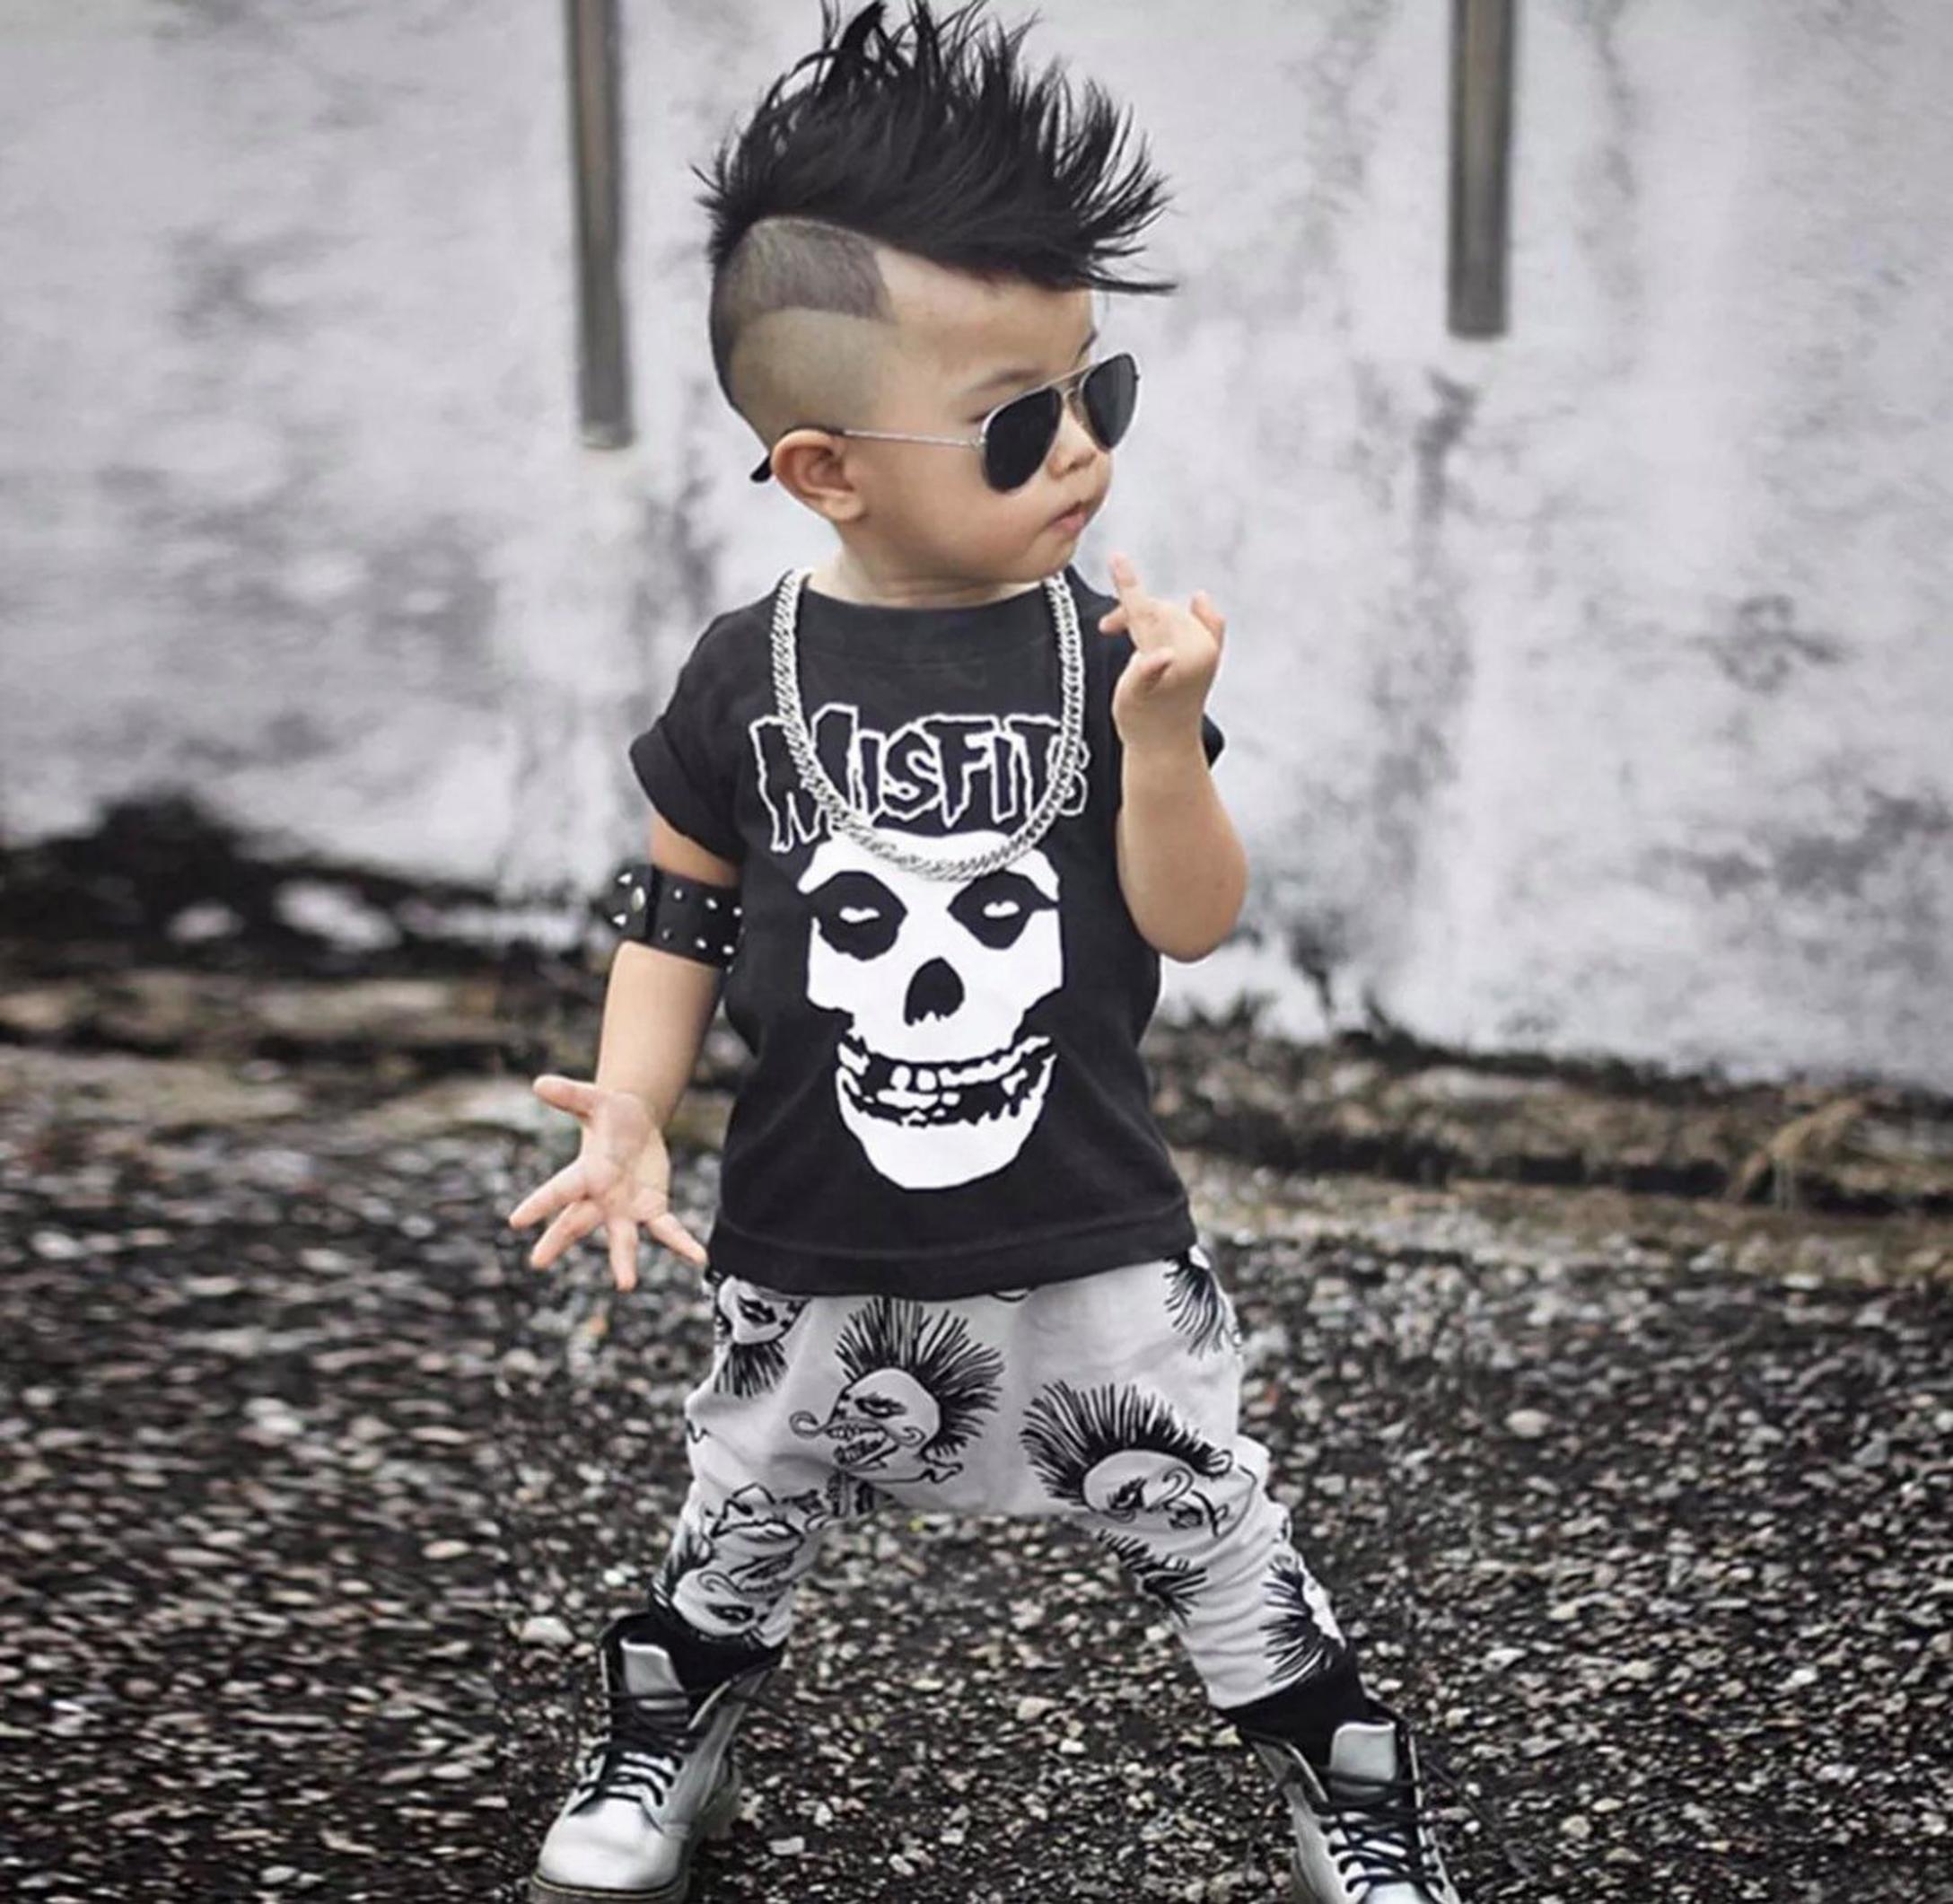 Adorable 'Goth' Baby Clothes | CafeMom.com